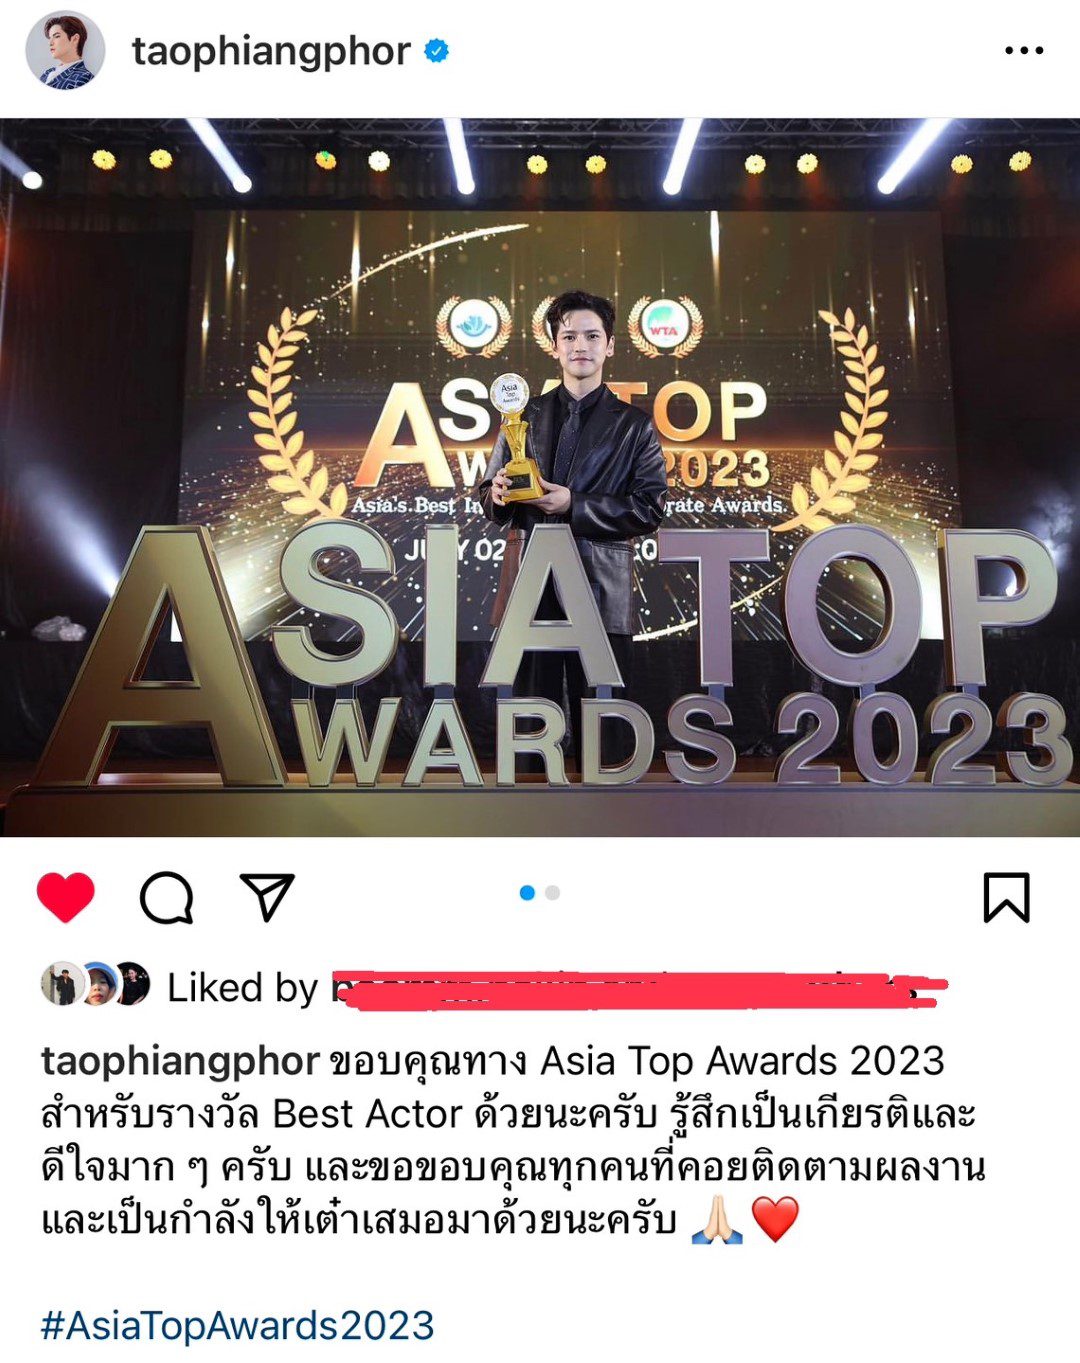 7. เต๋า เศรษฐพงศ์ รับรางวัล Best Actor จาก ASIA TOP AWARDS 2023